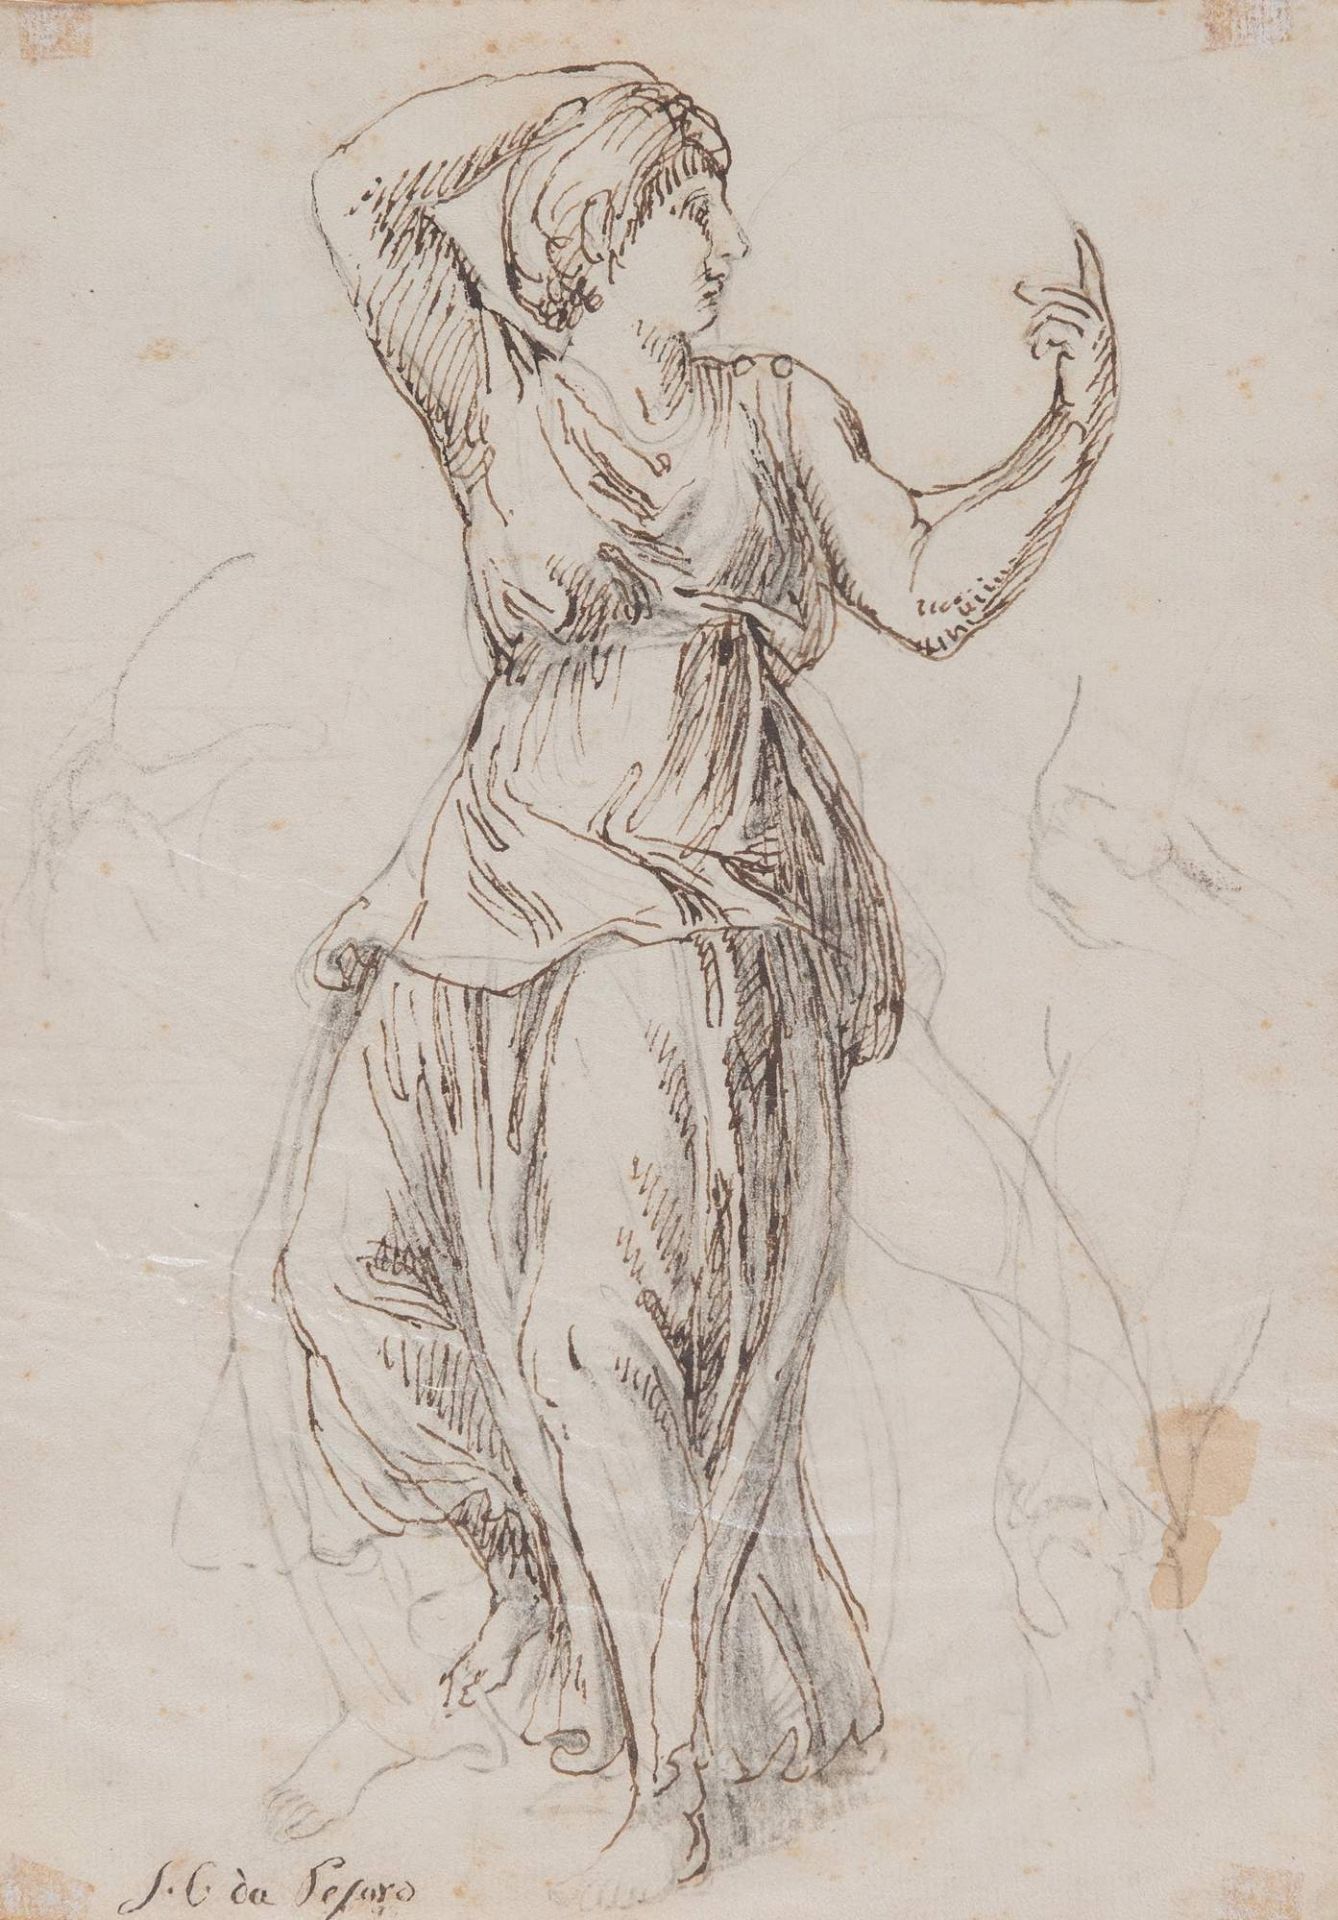 Maestro del XVIII secolo. “Figura allegorica”. Disegno a matita e china su carta. Cm 22x15,5.Opera